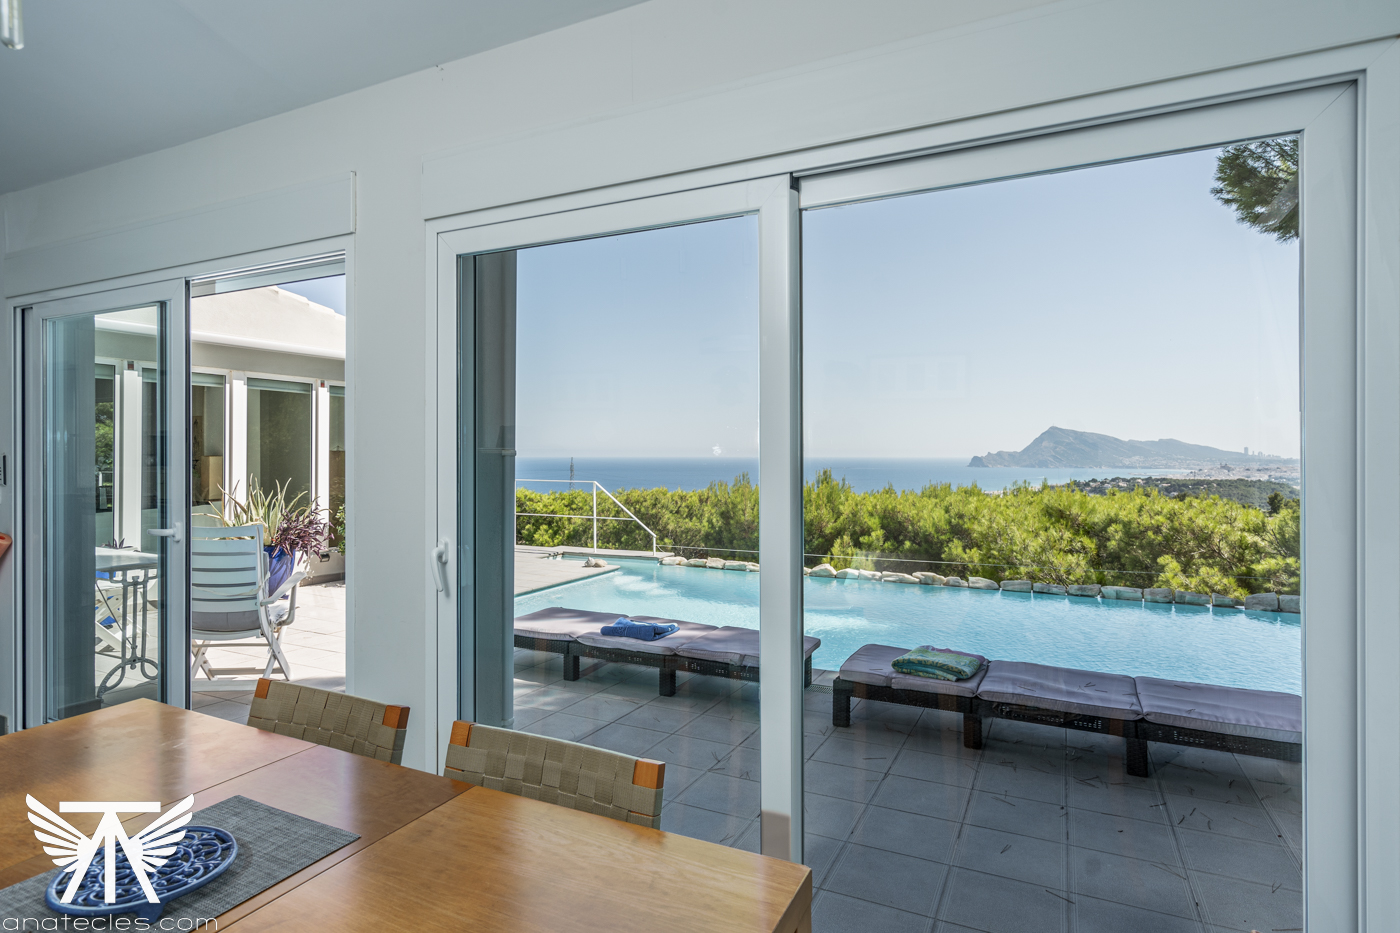 Продажа: Вилла у моря с панорамным видом - дом вашей мечты!